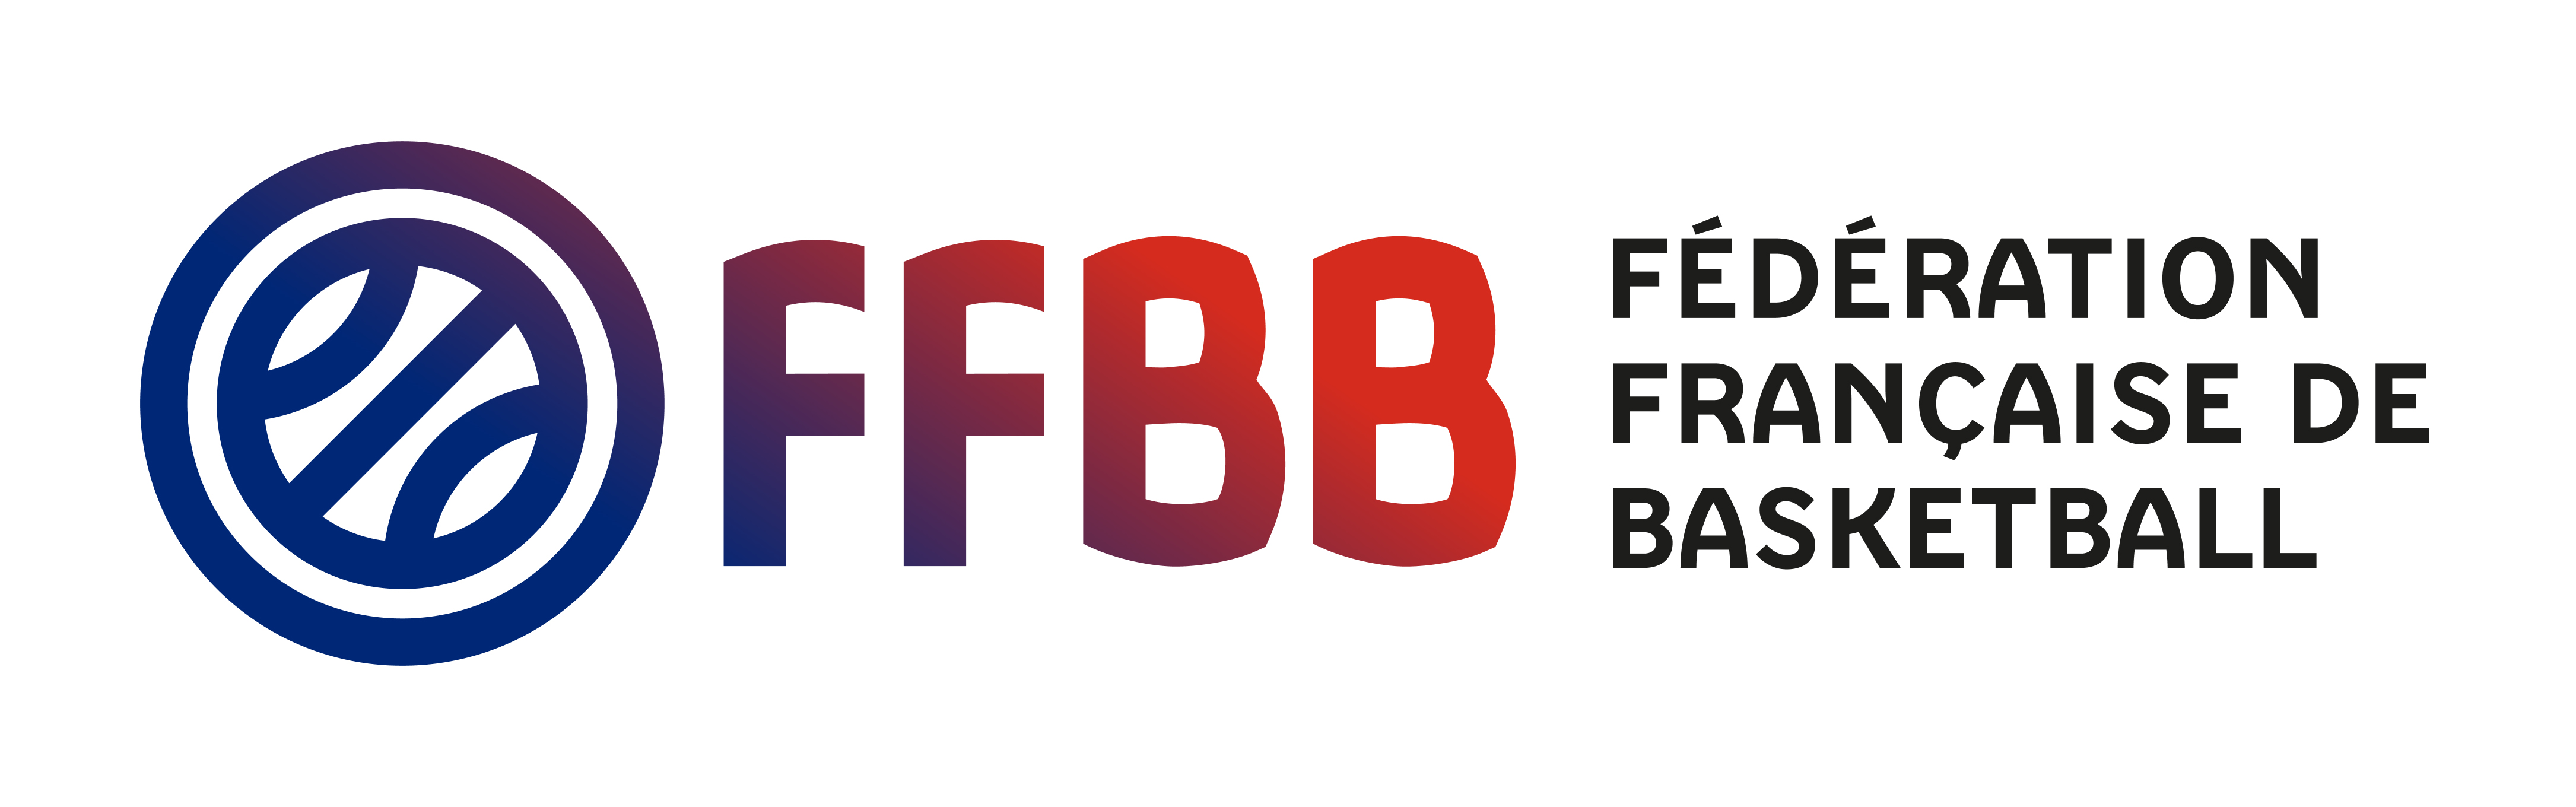 Appel à la concurrence – Assurance Fédérale | FFBB